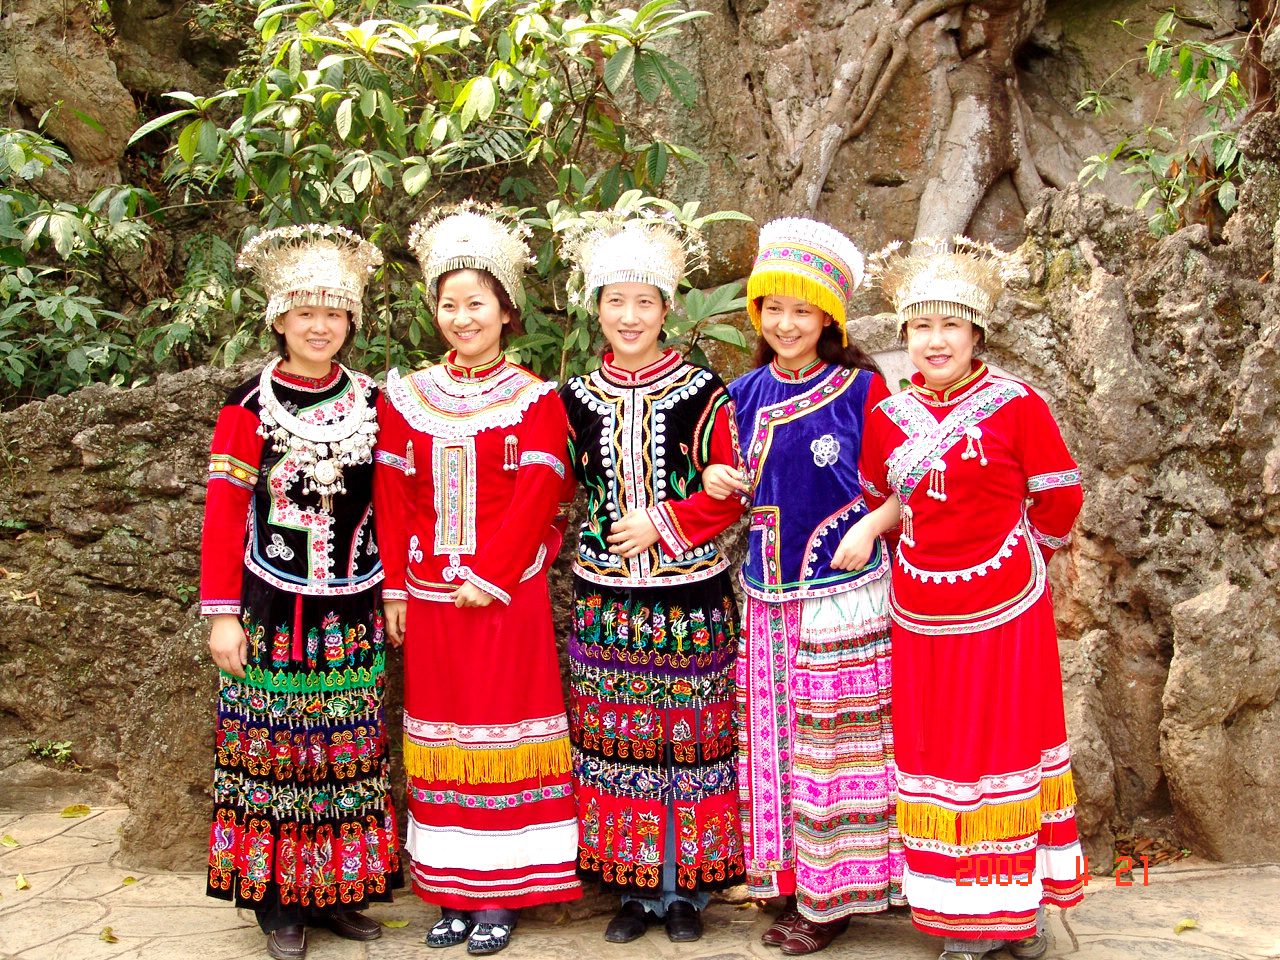 贵州有一独特的苗族村寨，女生四季穿短裙，被称为短裙苗第一村_少数民族